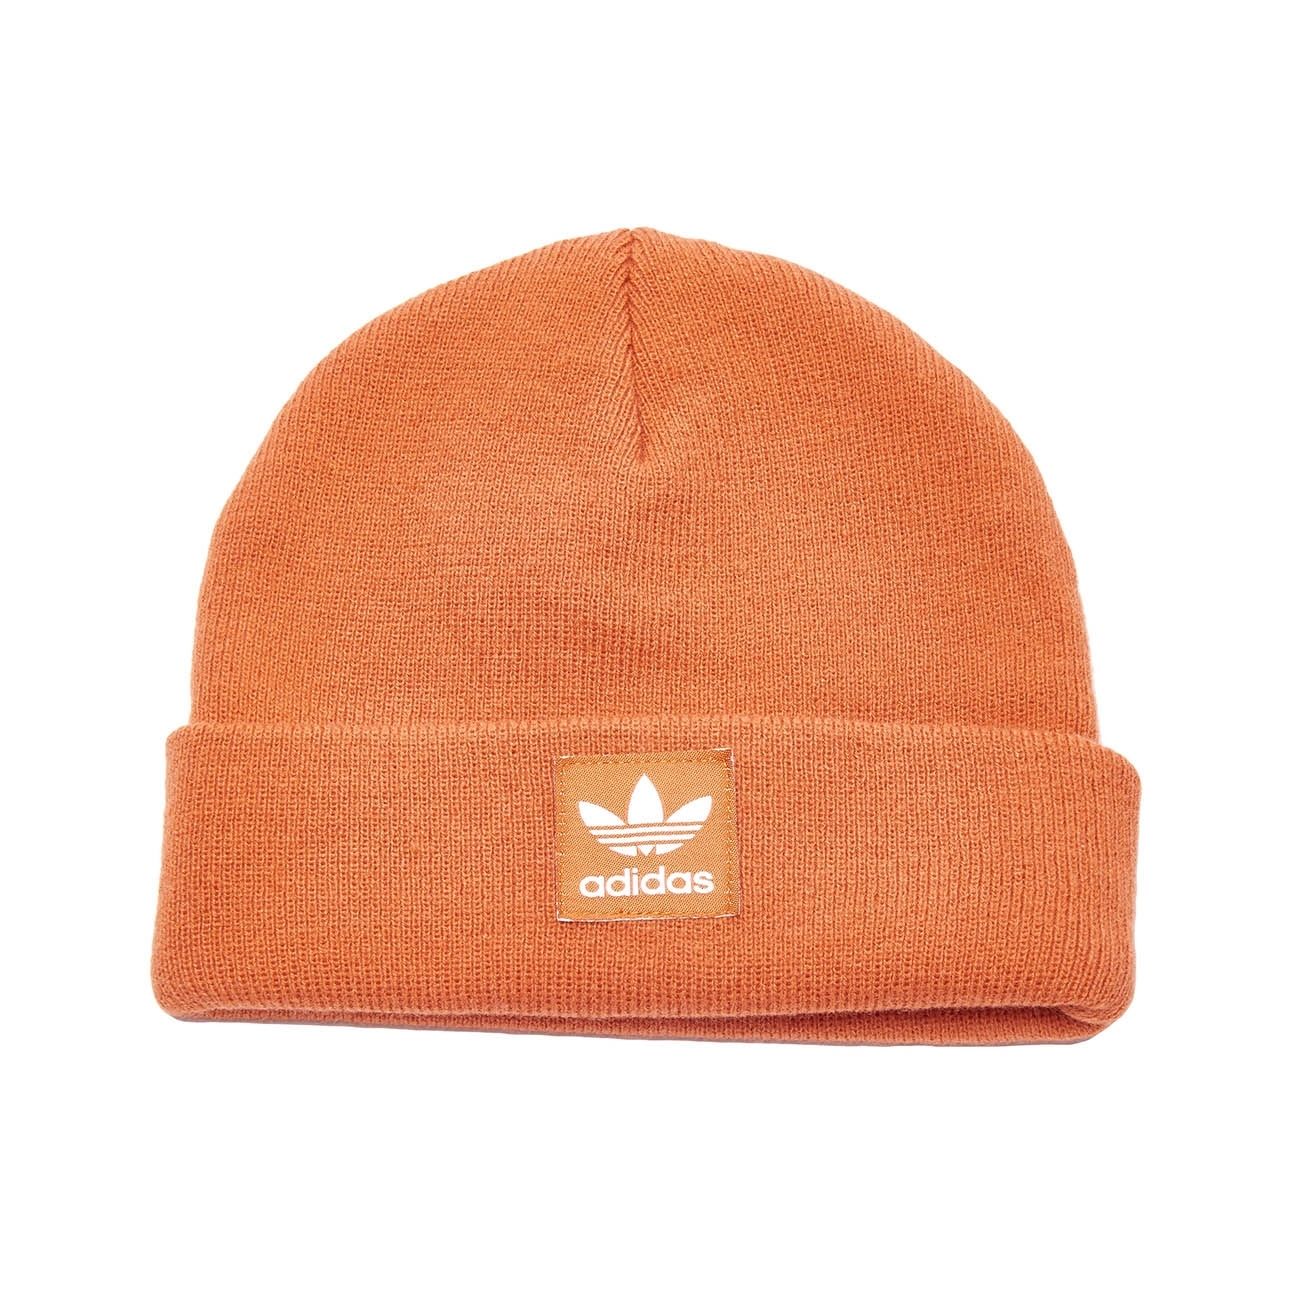 sconto 81% Adidas Cappello e berretto Arancione Unica MODA DONNA Accessori Cappello e berretto Arancione 